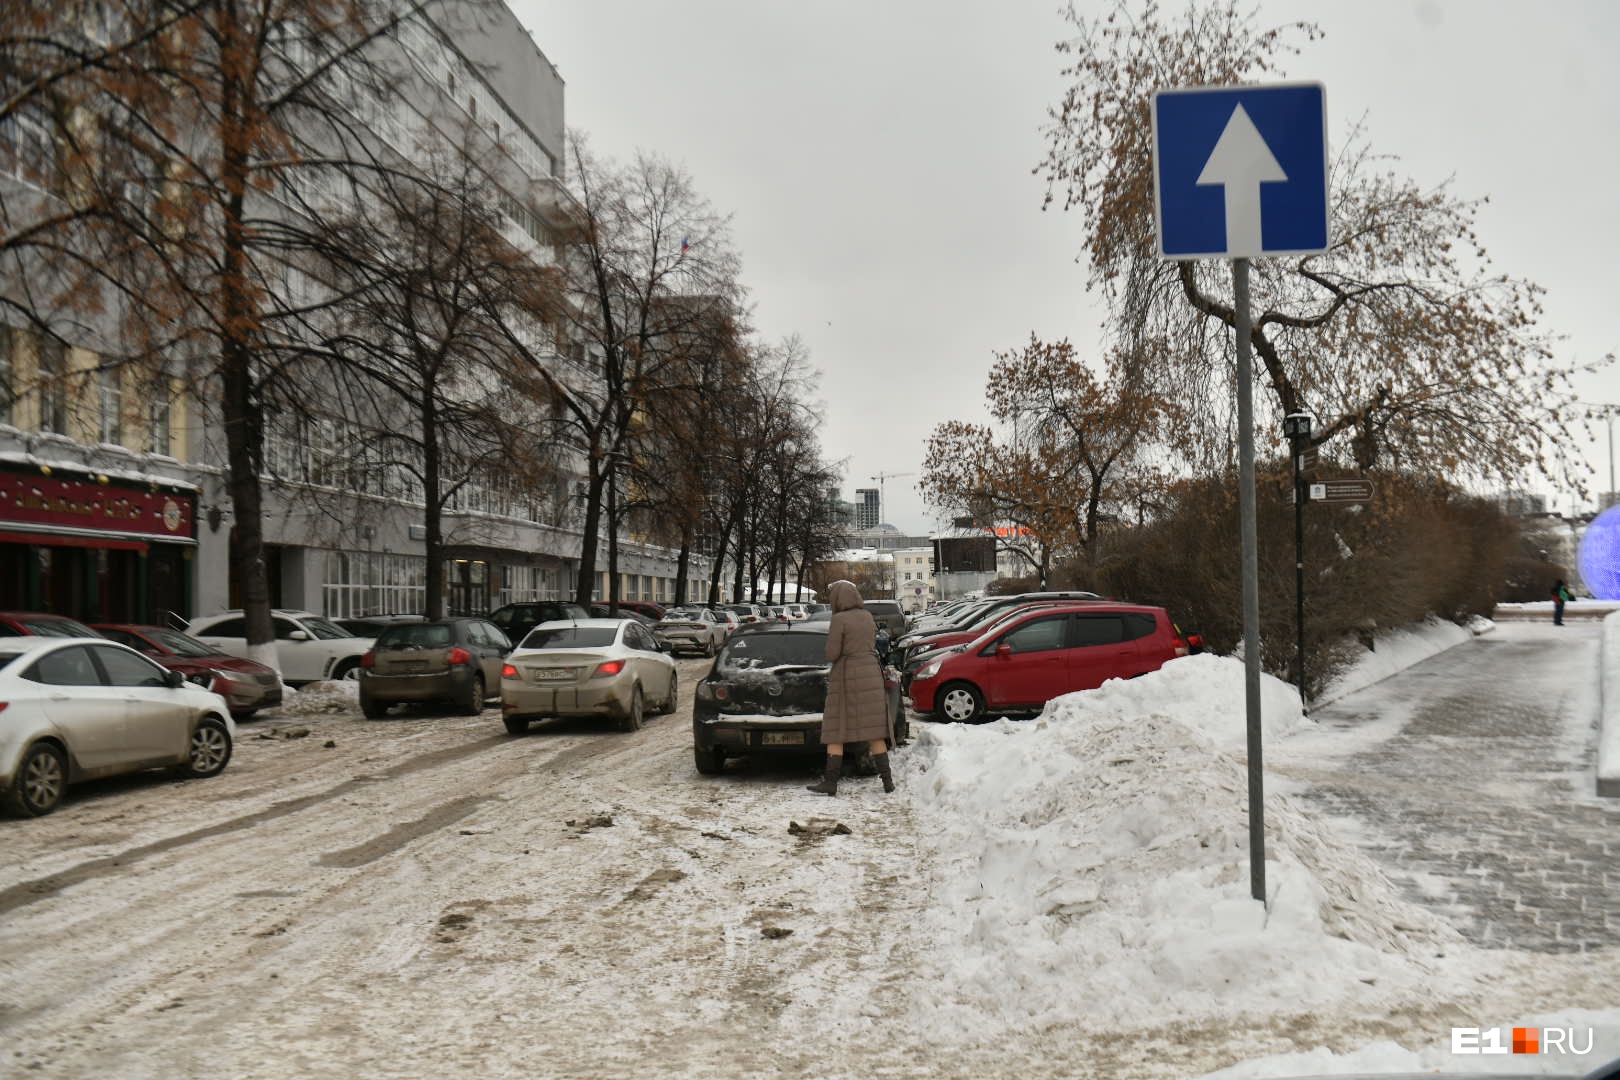 Новый знак односторонней дороги на въезде со стороны улицы Пушкина